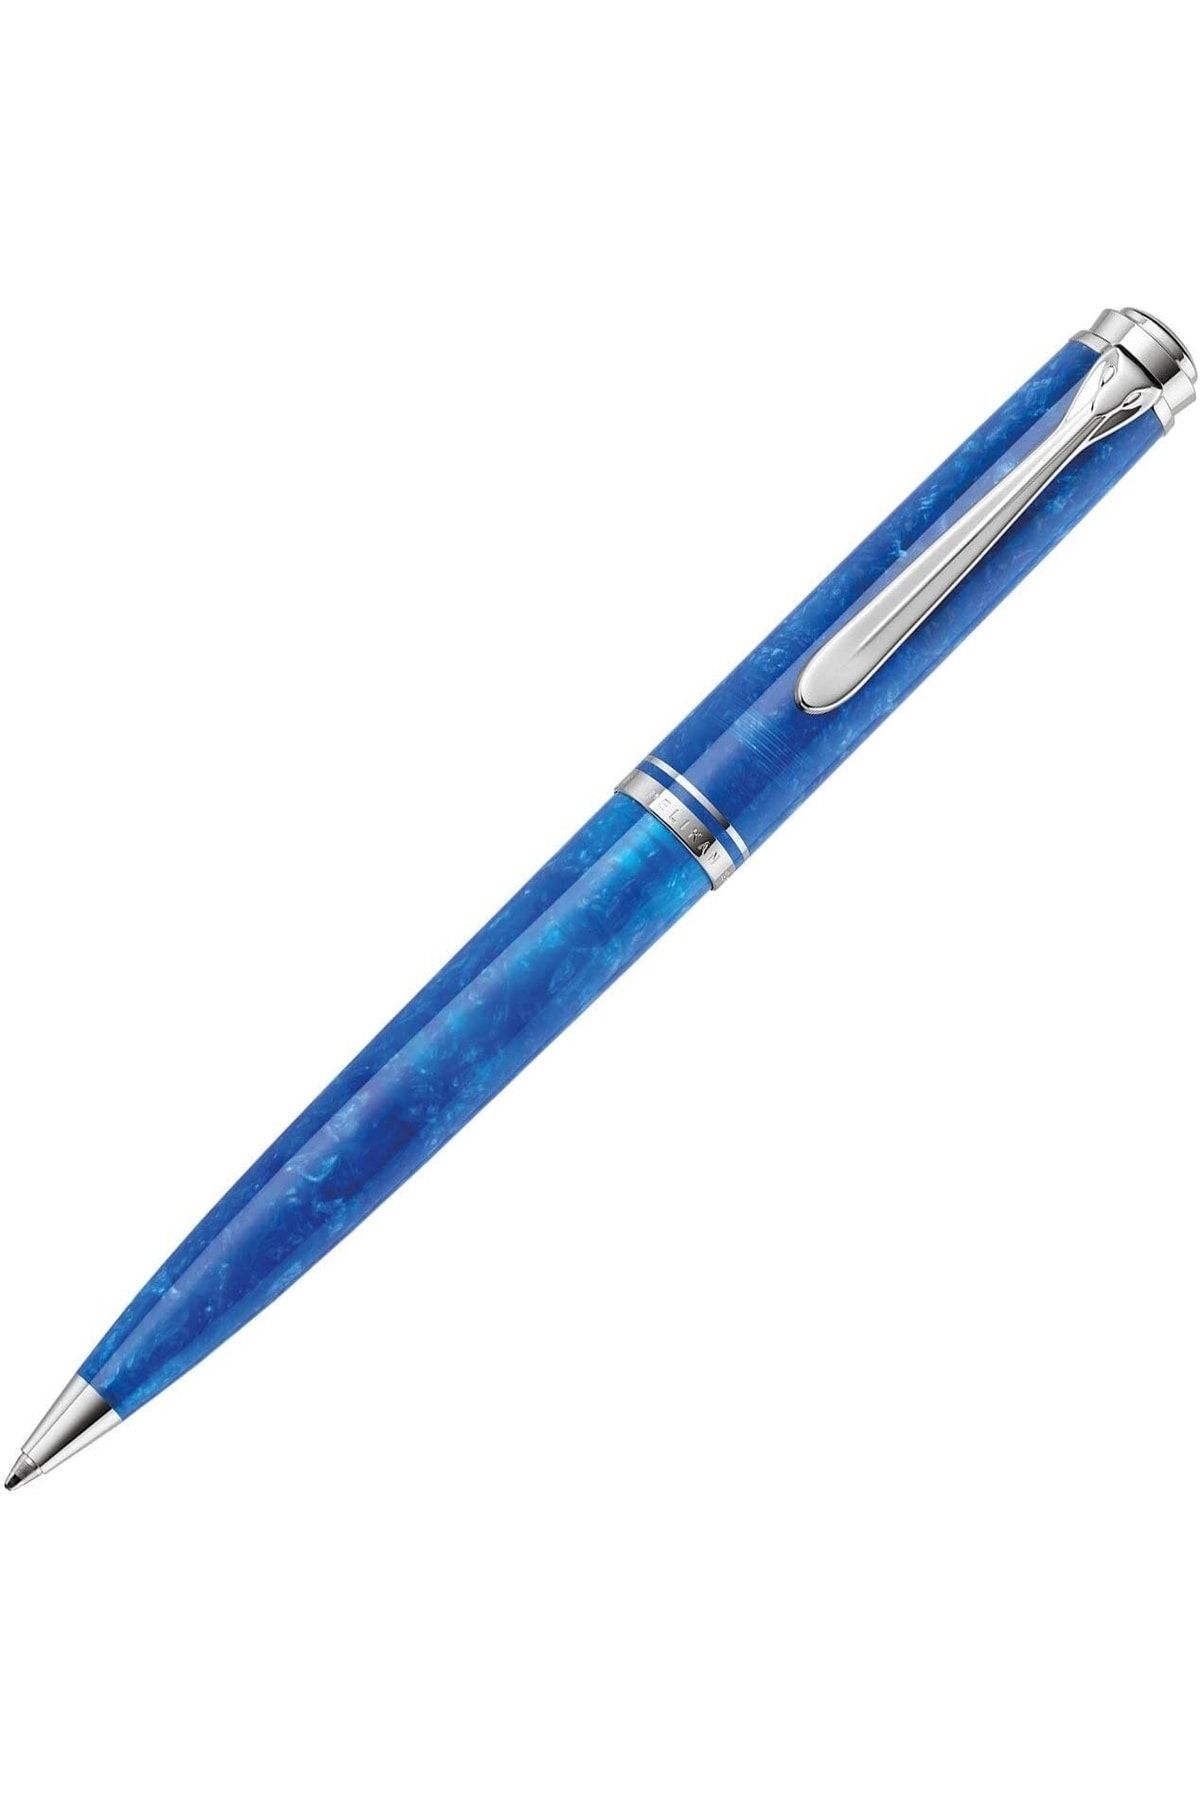 Pelikan Souverän Serisi K805 Vibrant Blue Tükenmez Kalem